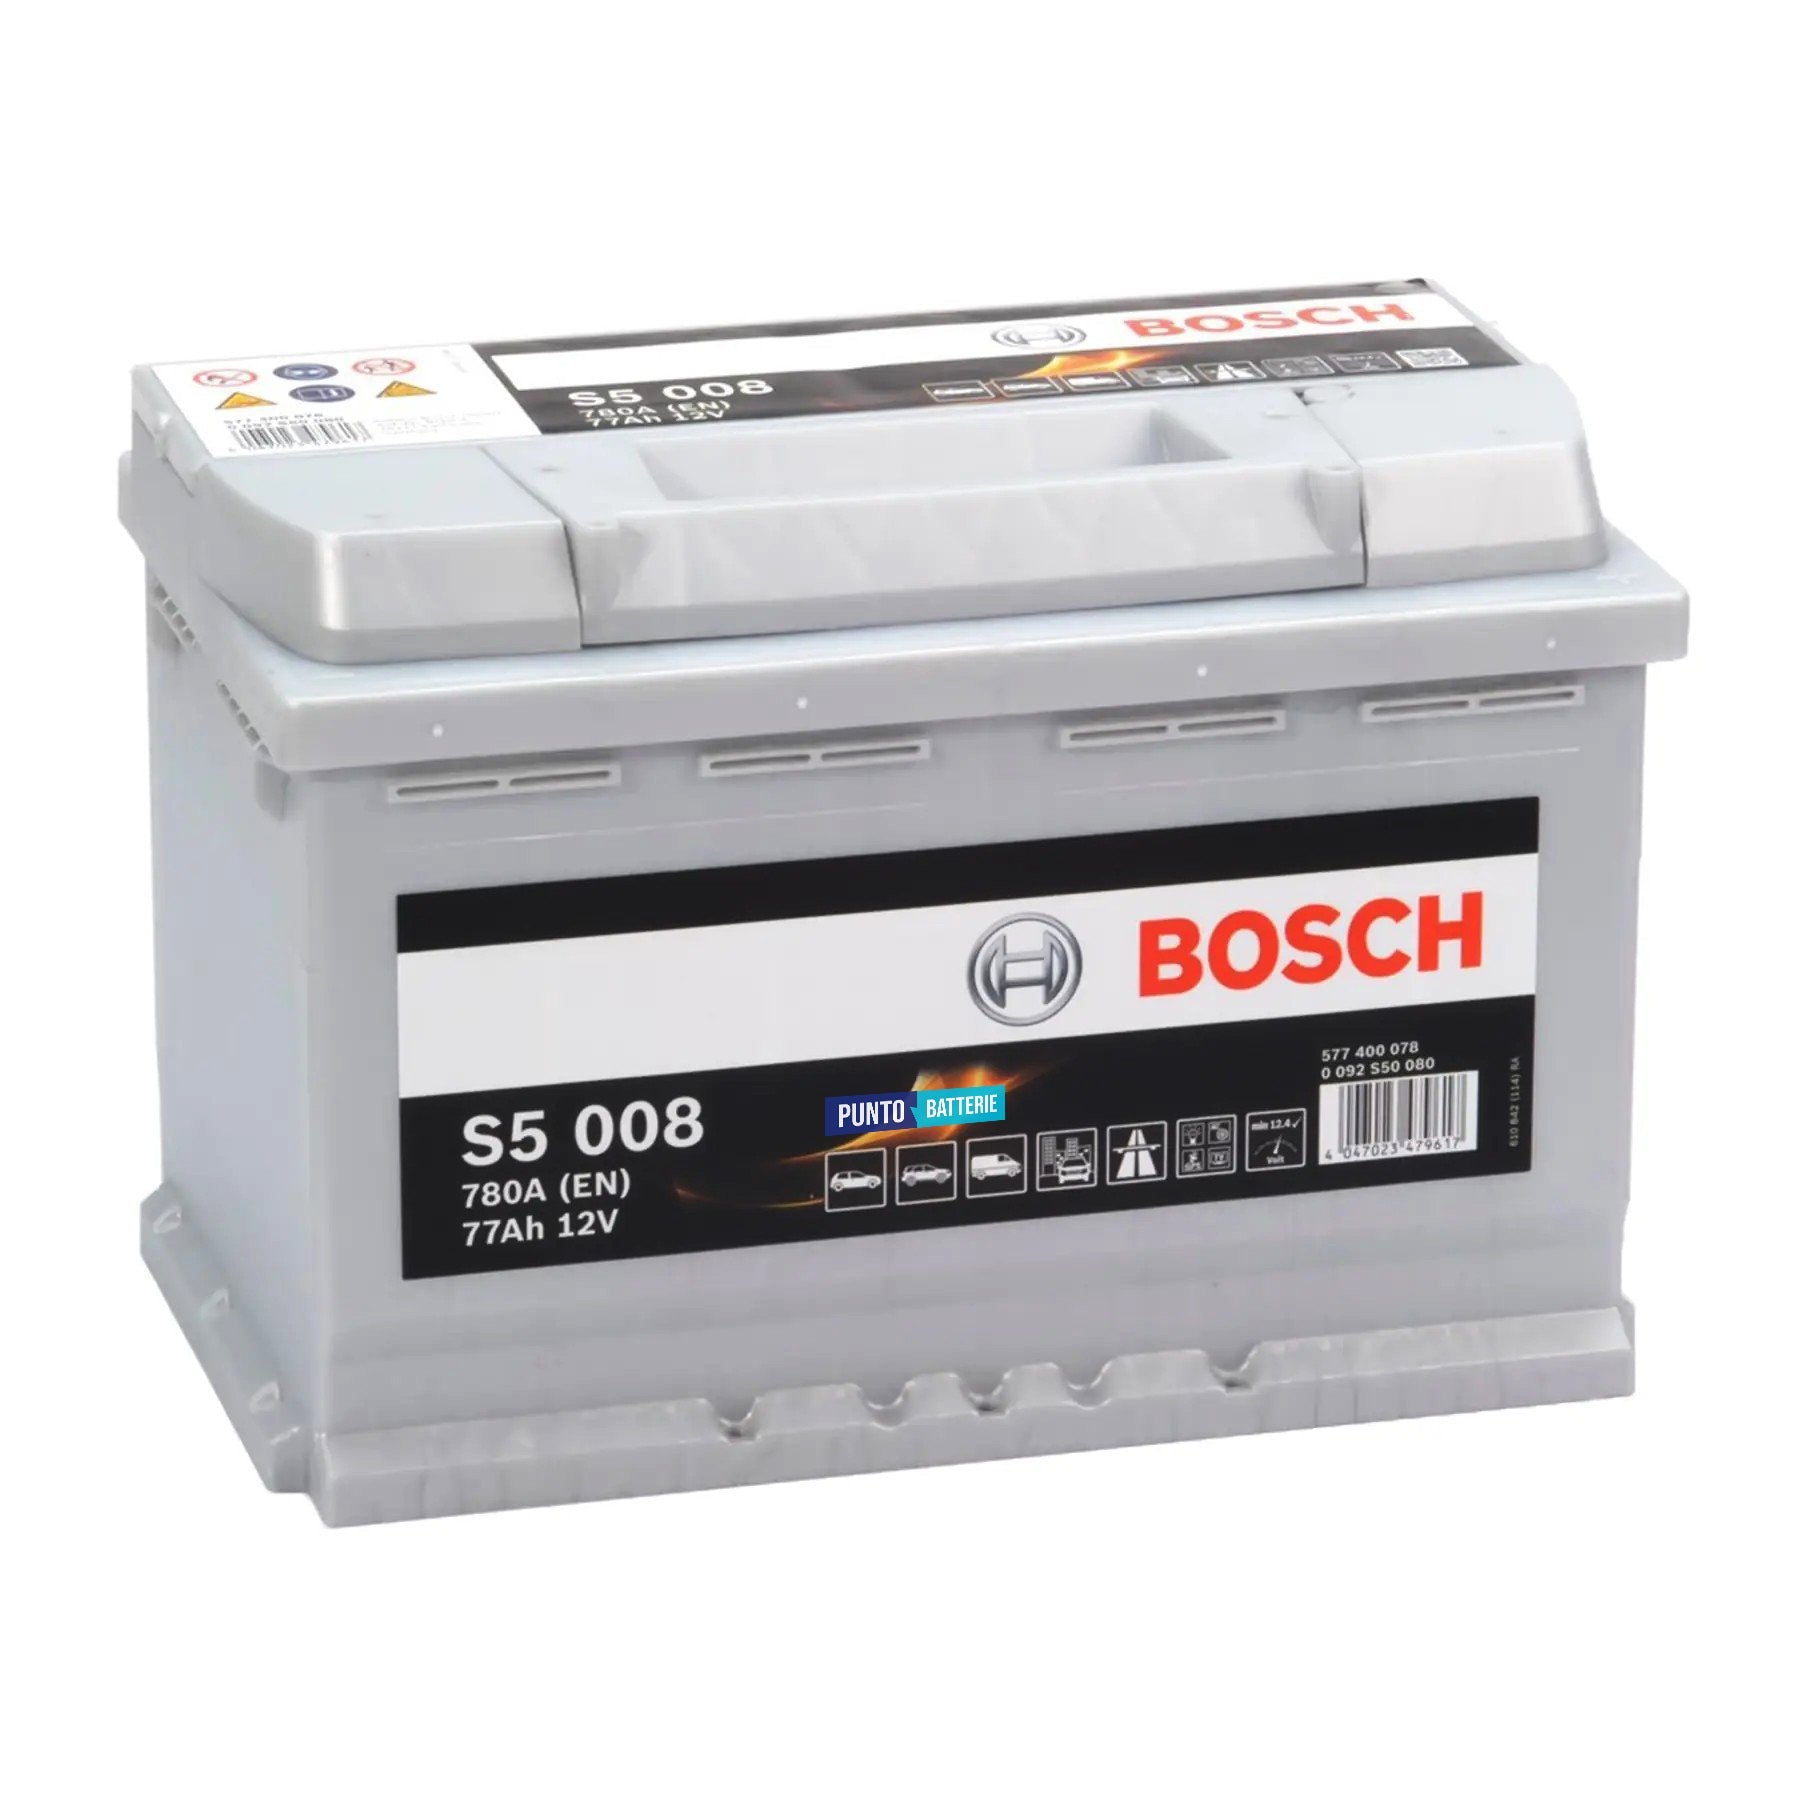 Batteria originale Bosch S5 S5 008, dimensioni 278 x 175 x 190, polo positivo a destra, 12 volt, 77 amperora, 780 ampere. Batteria per auto e veicoli leggeri.